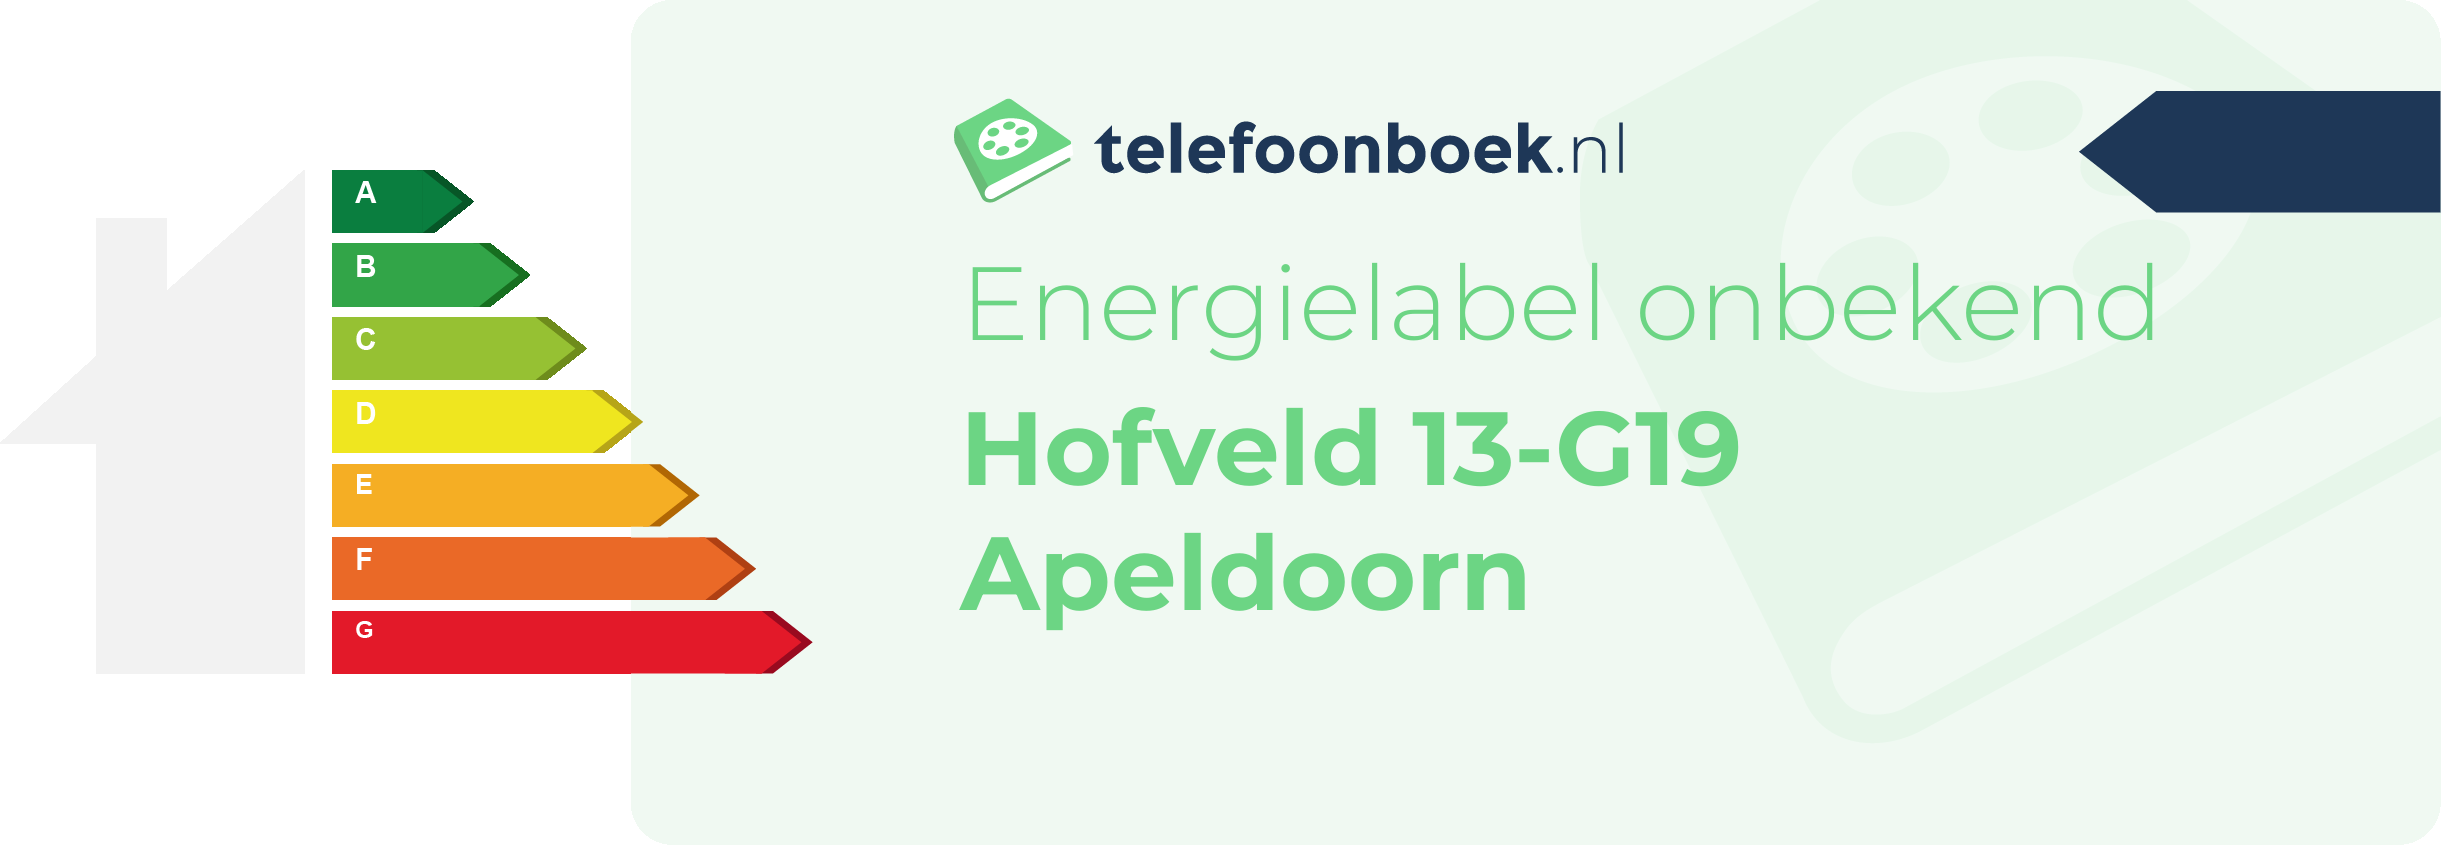 Energielabel Hofveld 13-G19 Apeldoorn